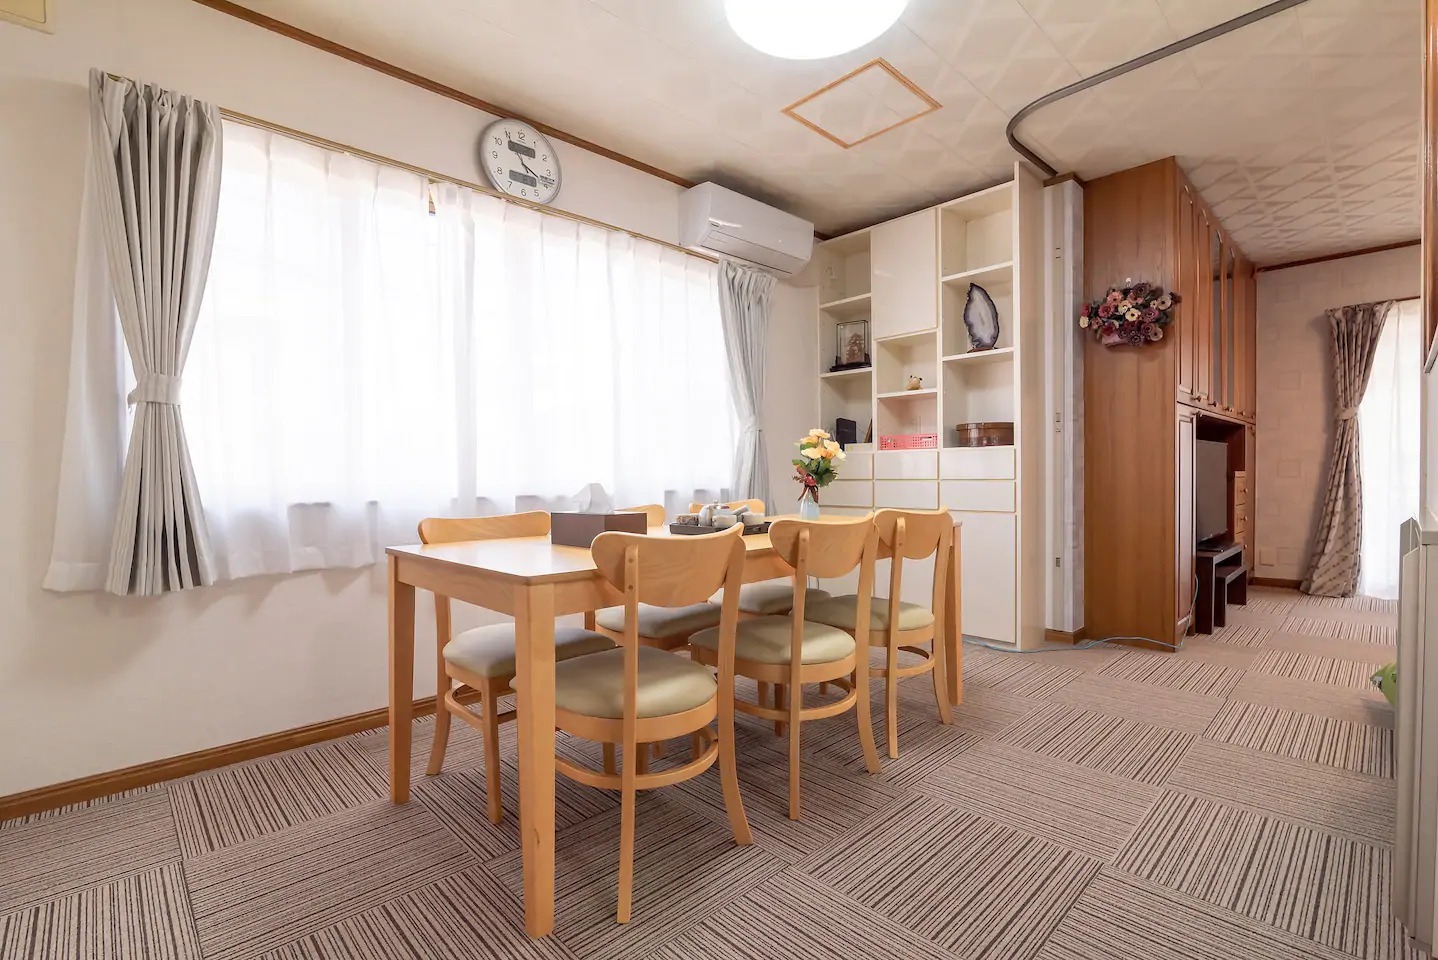 新宿駅8分。5LDKの151m2高級バスルーム付き一軒家。最寄駅から5分、高台に位置する静かな高級住